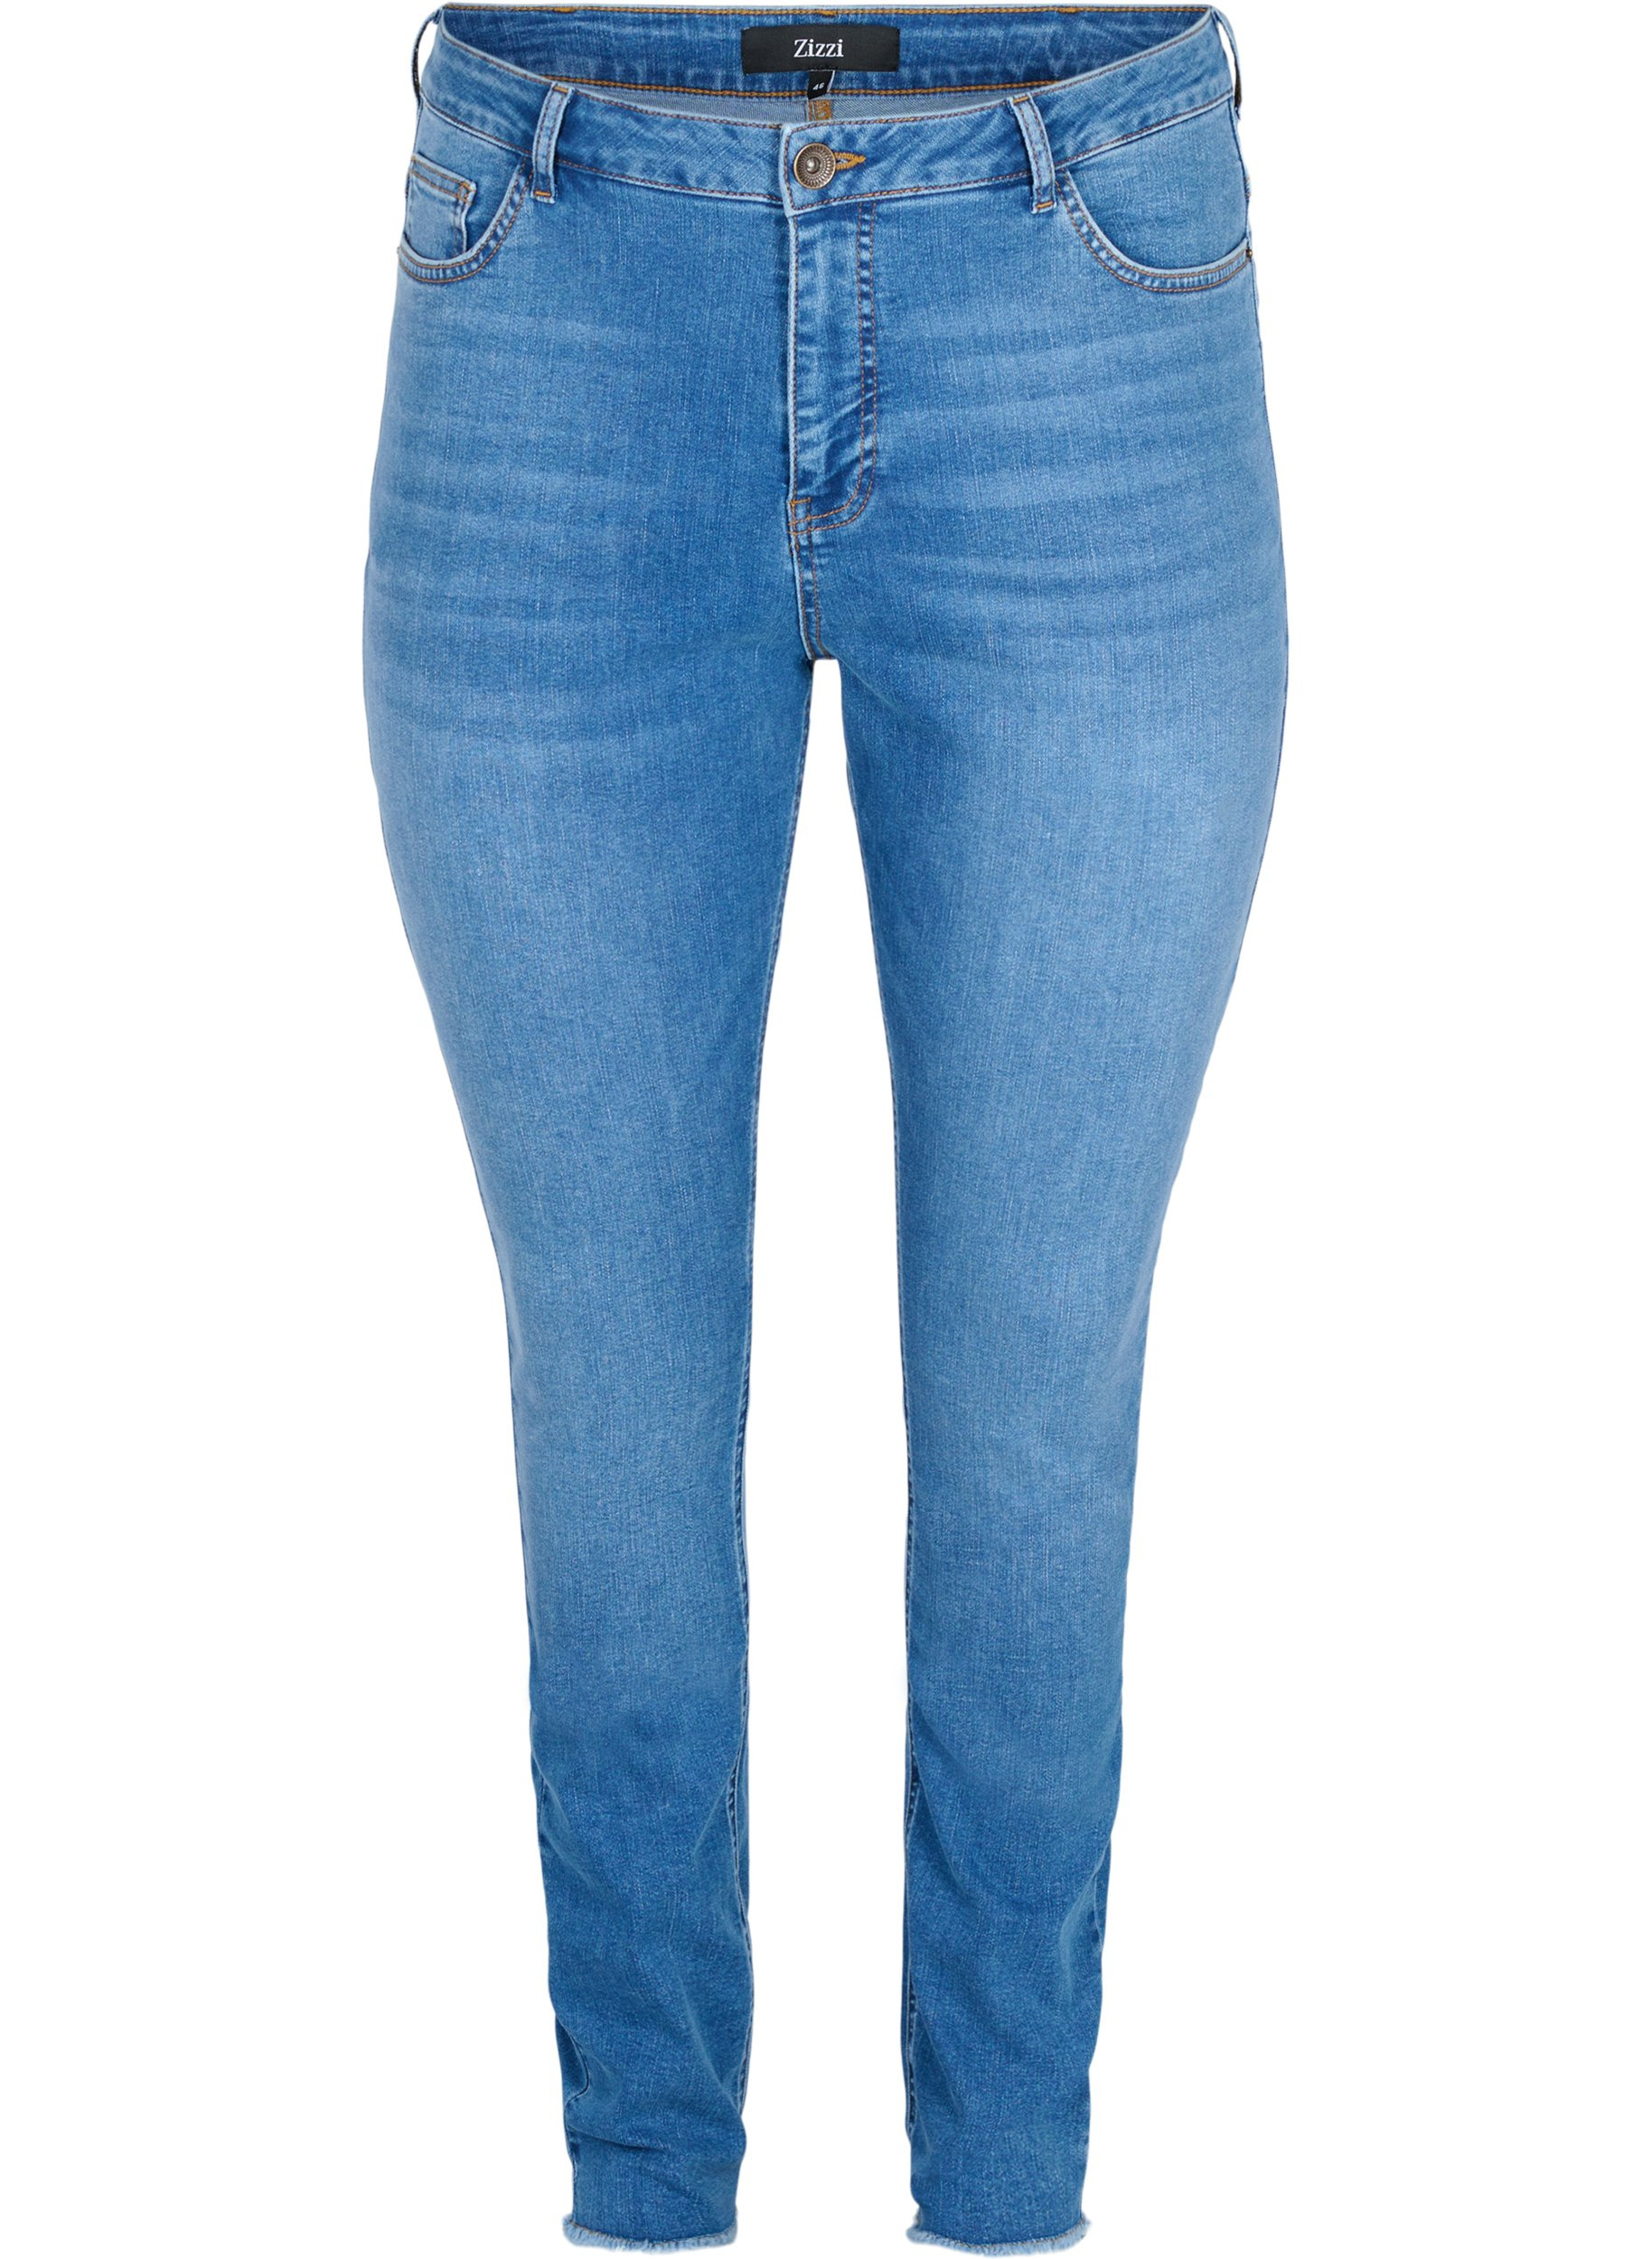 Bea jeans met extra hoge taille, Blue denim, Packshot